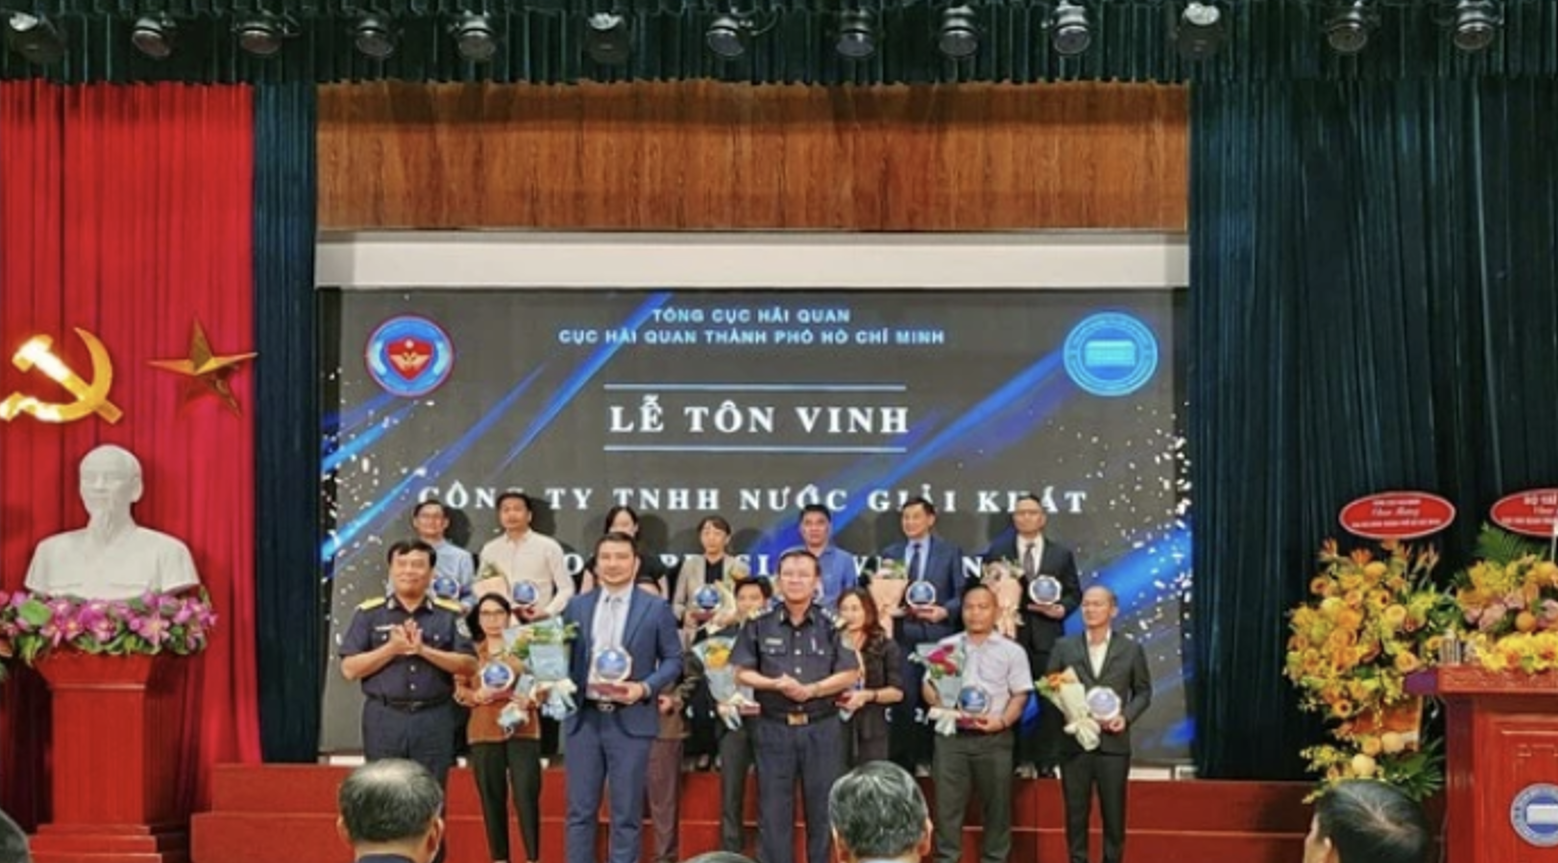 Suntory PepsiCo Việt Nam cũng là doanh nghiệp nước giải khát duy nhất được biểu dương tại Lễ tôn vinh